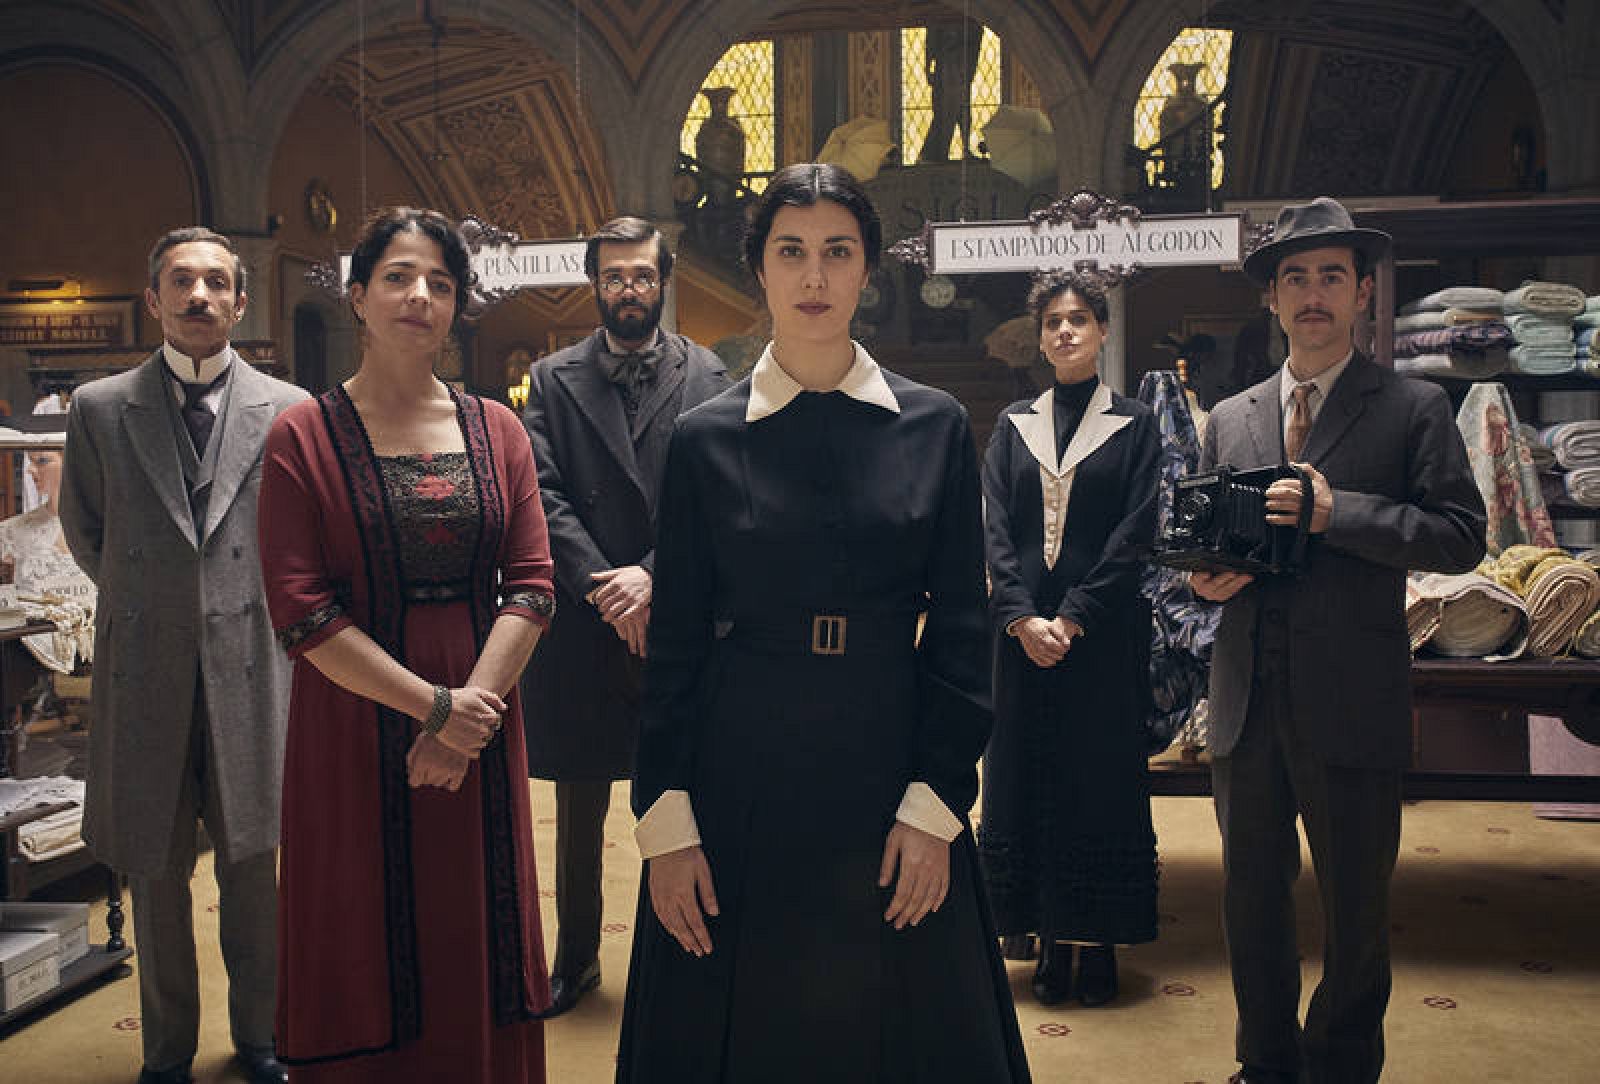   'La mujer del Siglo' está protagonizada por Elena Martín, Nora Navas, Àlex Monner y Bruna Cusí, entre otros, y dirigida por Sílvia Quer